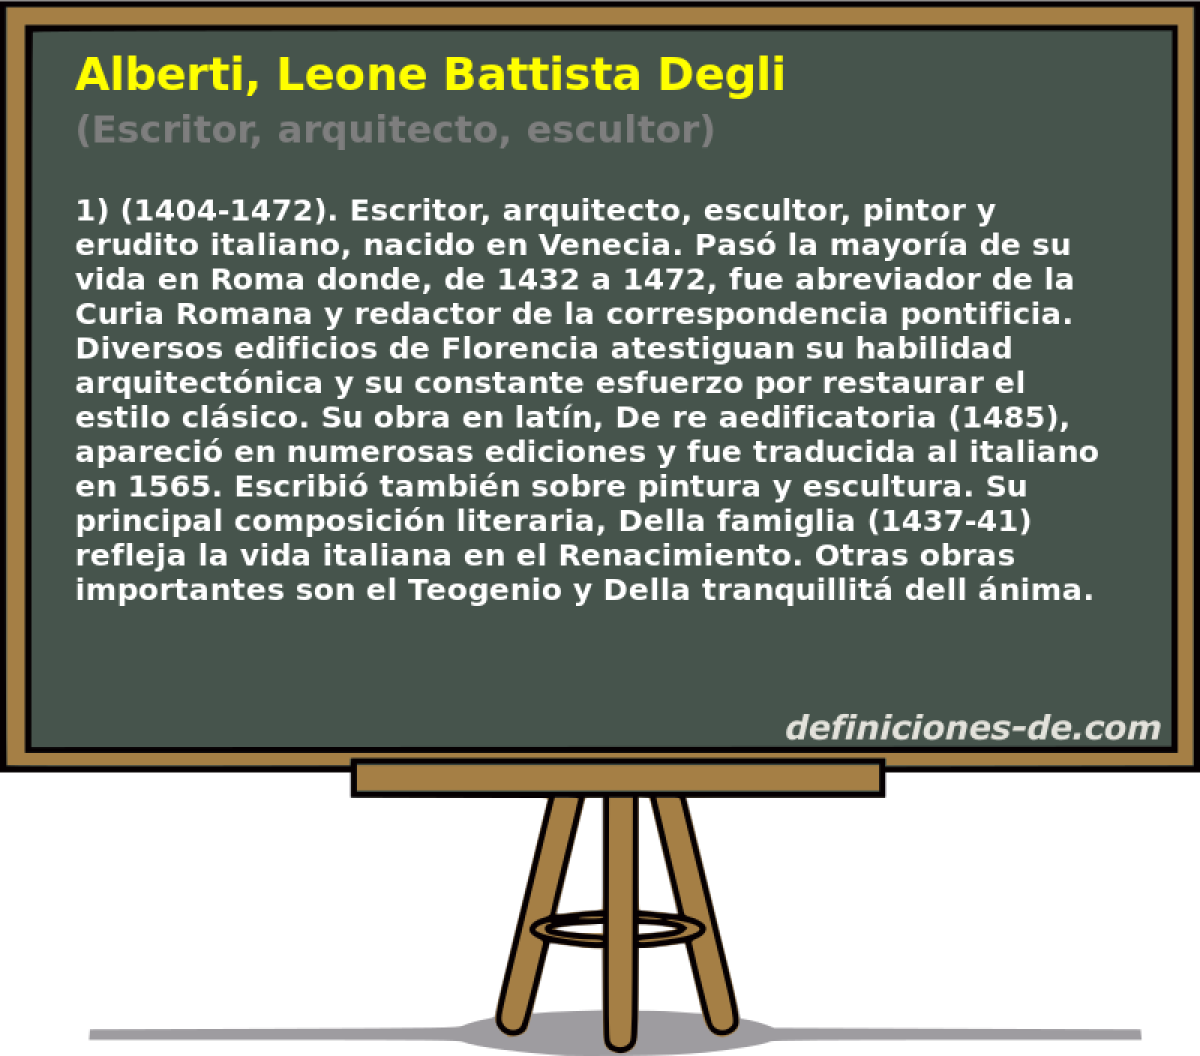 Alberti, Leone Battista Degli (Escritor, arquitecto, escultor)